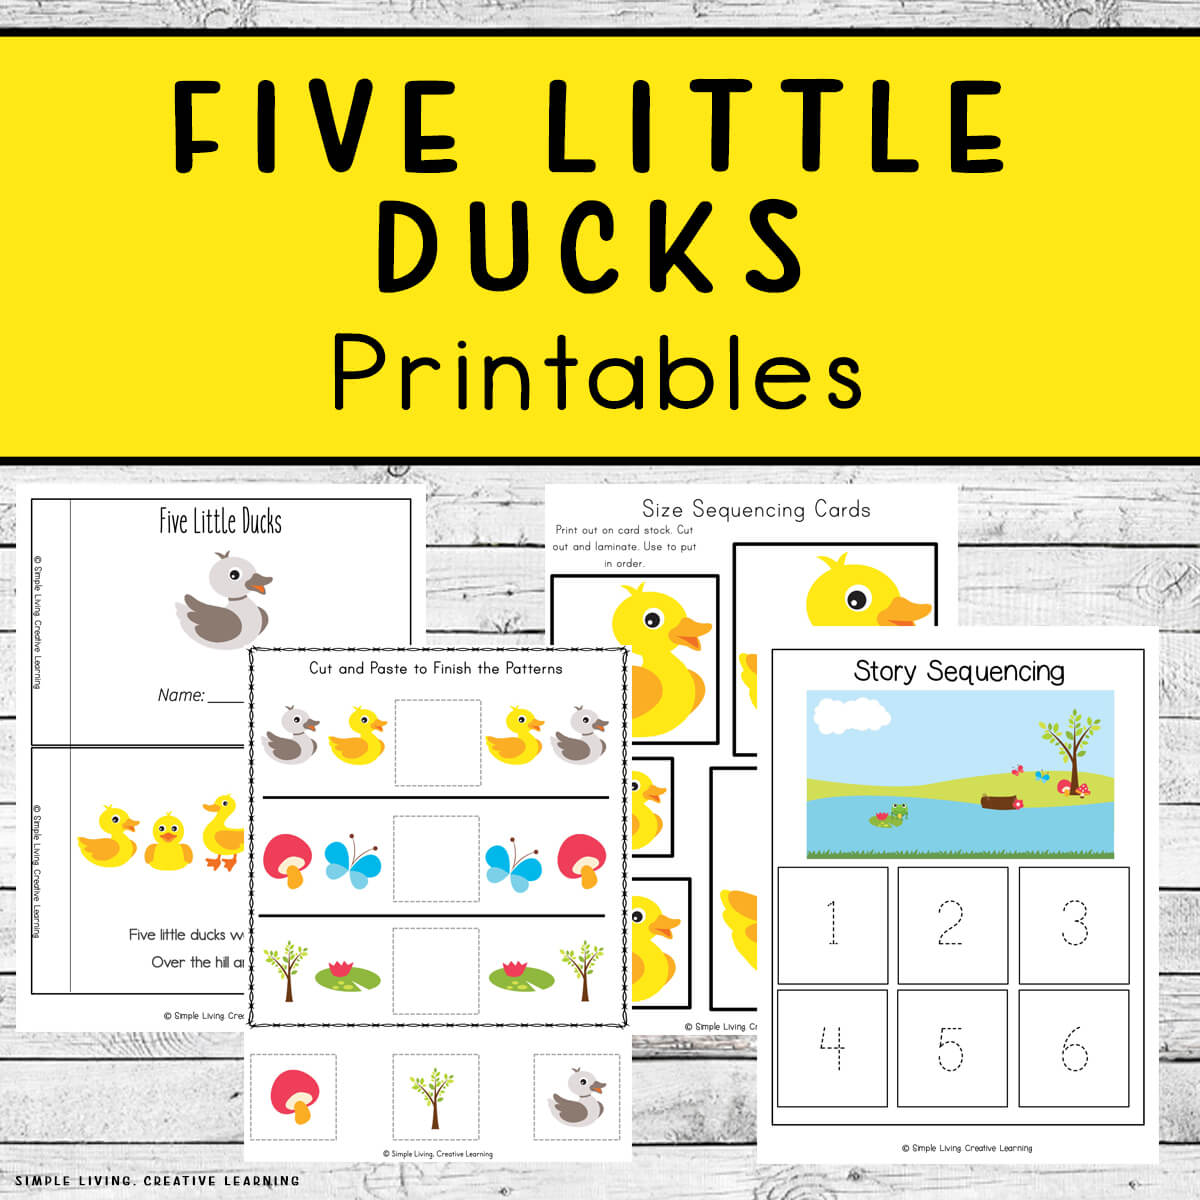 Five Little Ducks Printables four pages